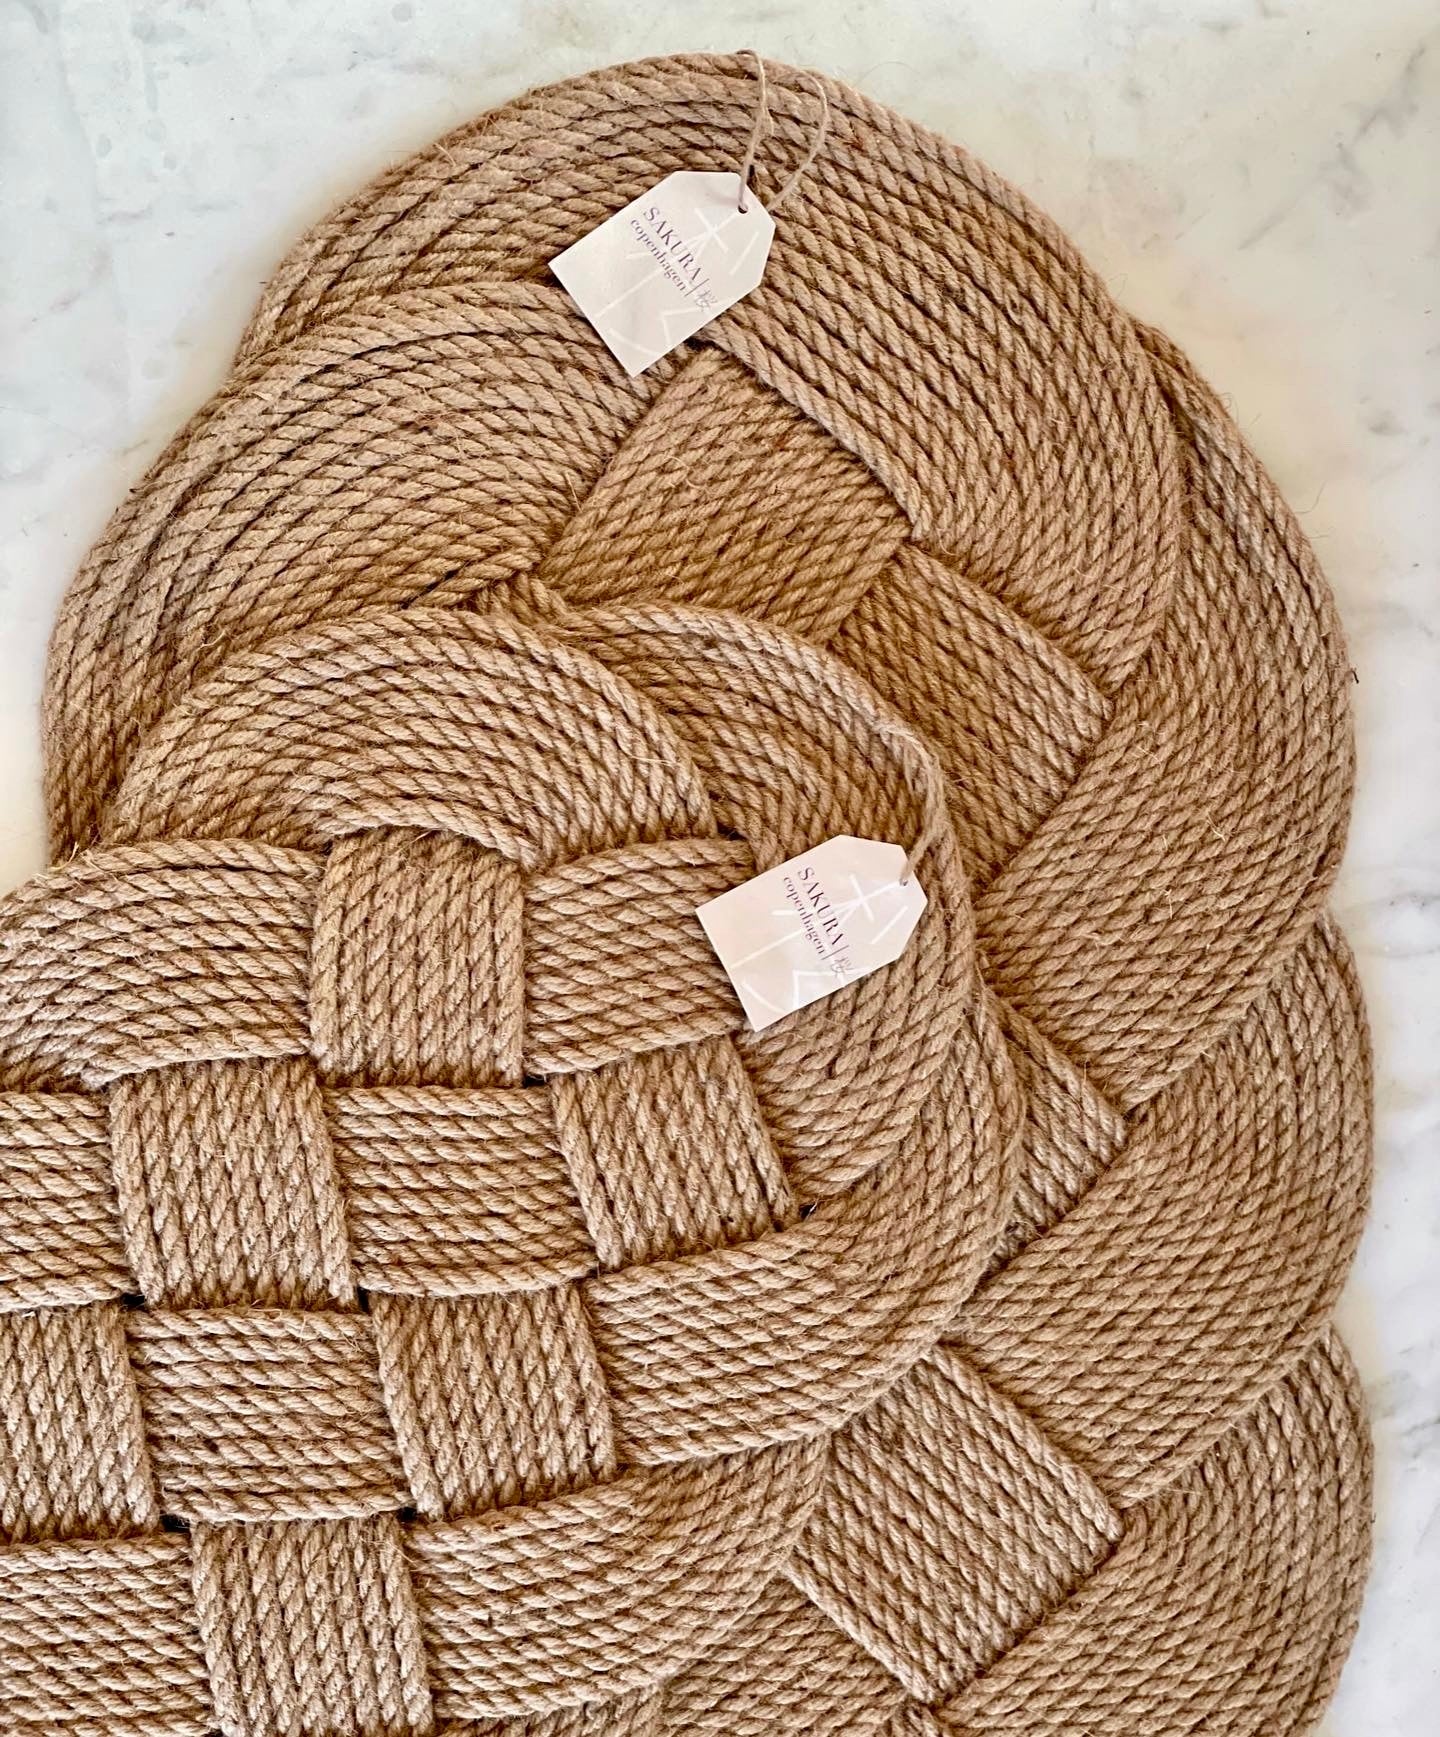 Small hand-woven door mat in jute 